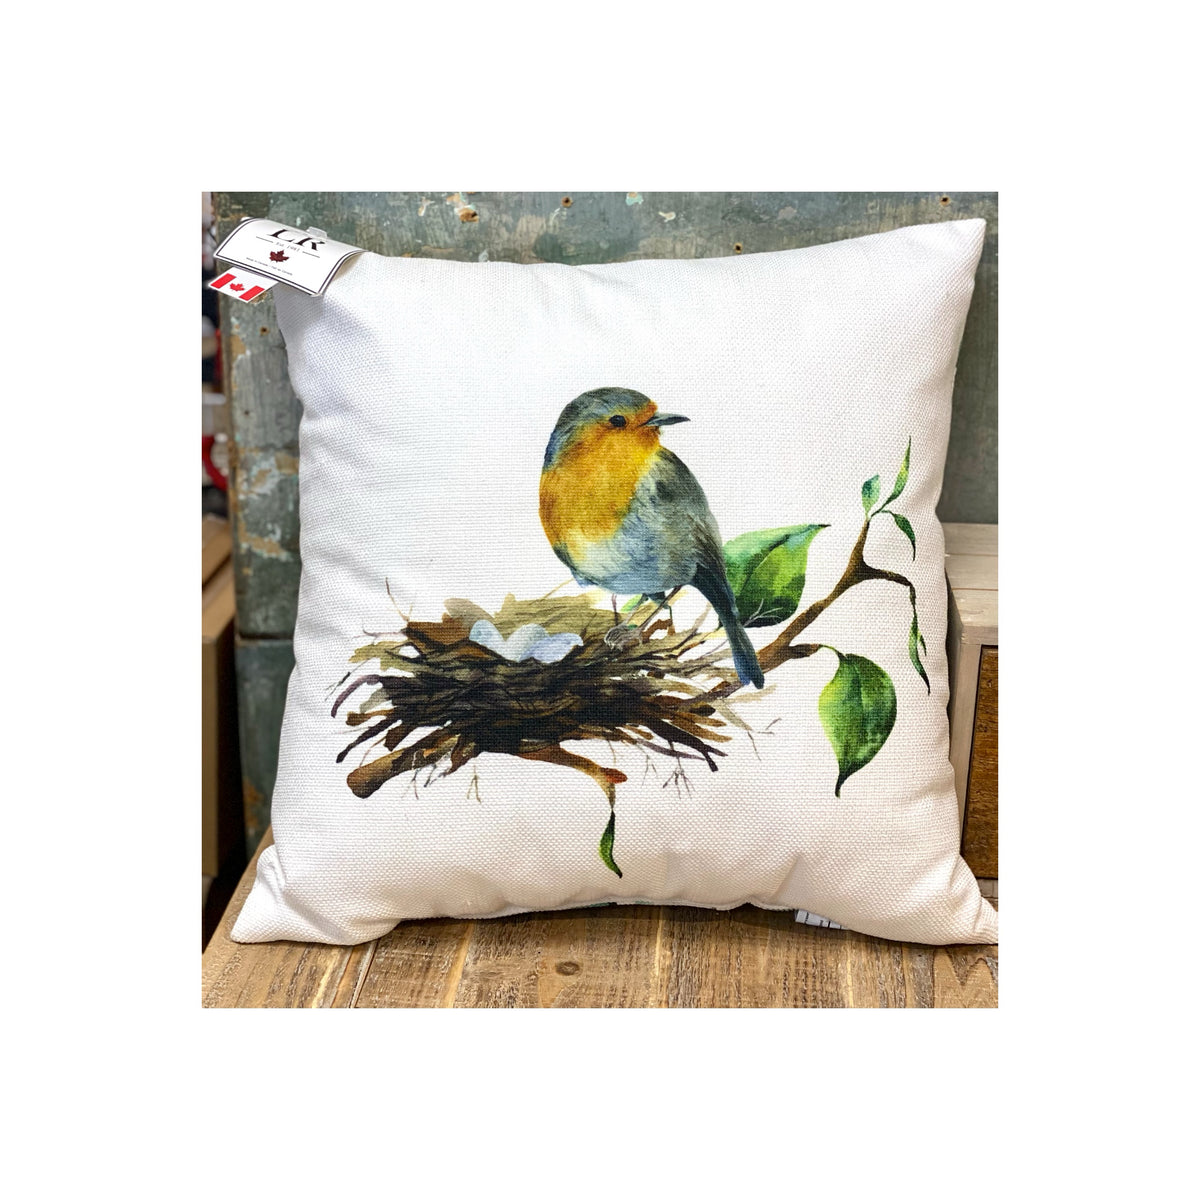 Pillow- Watercolour Nesting Bird & Leaf Design